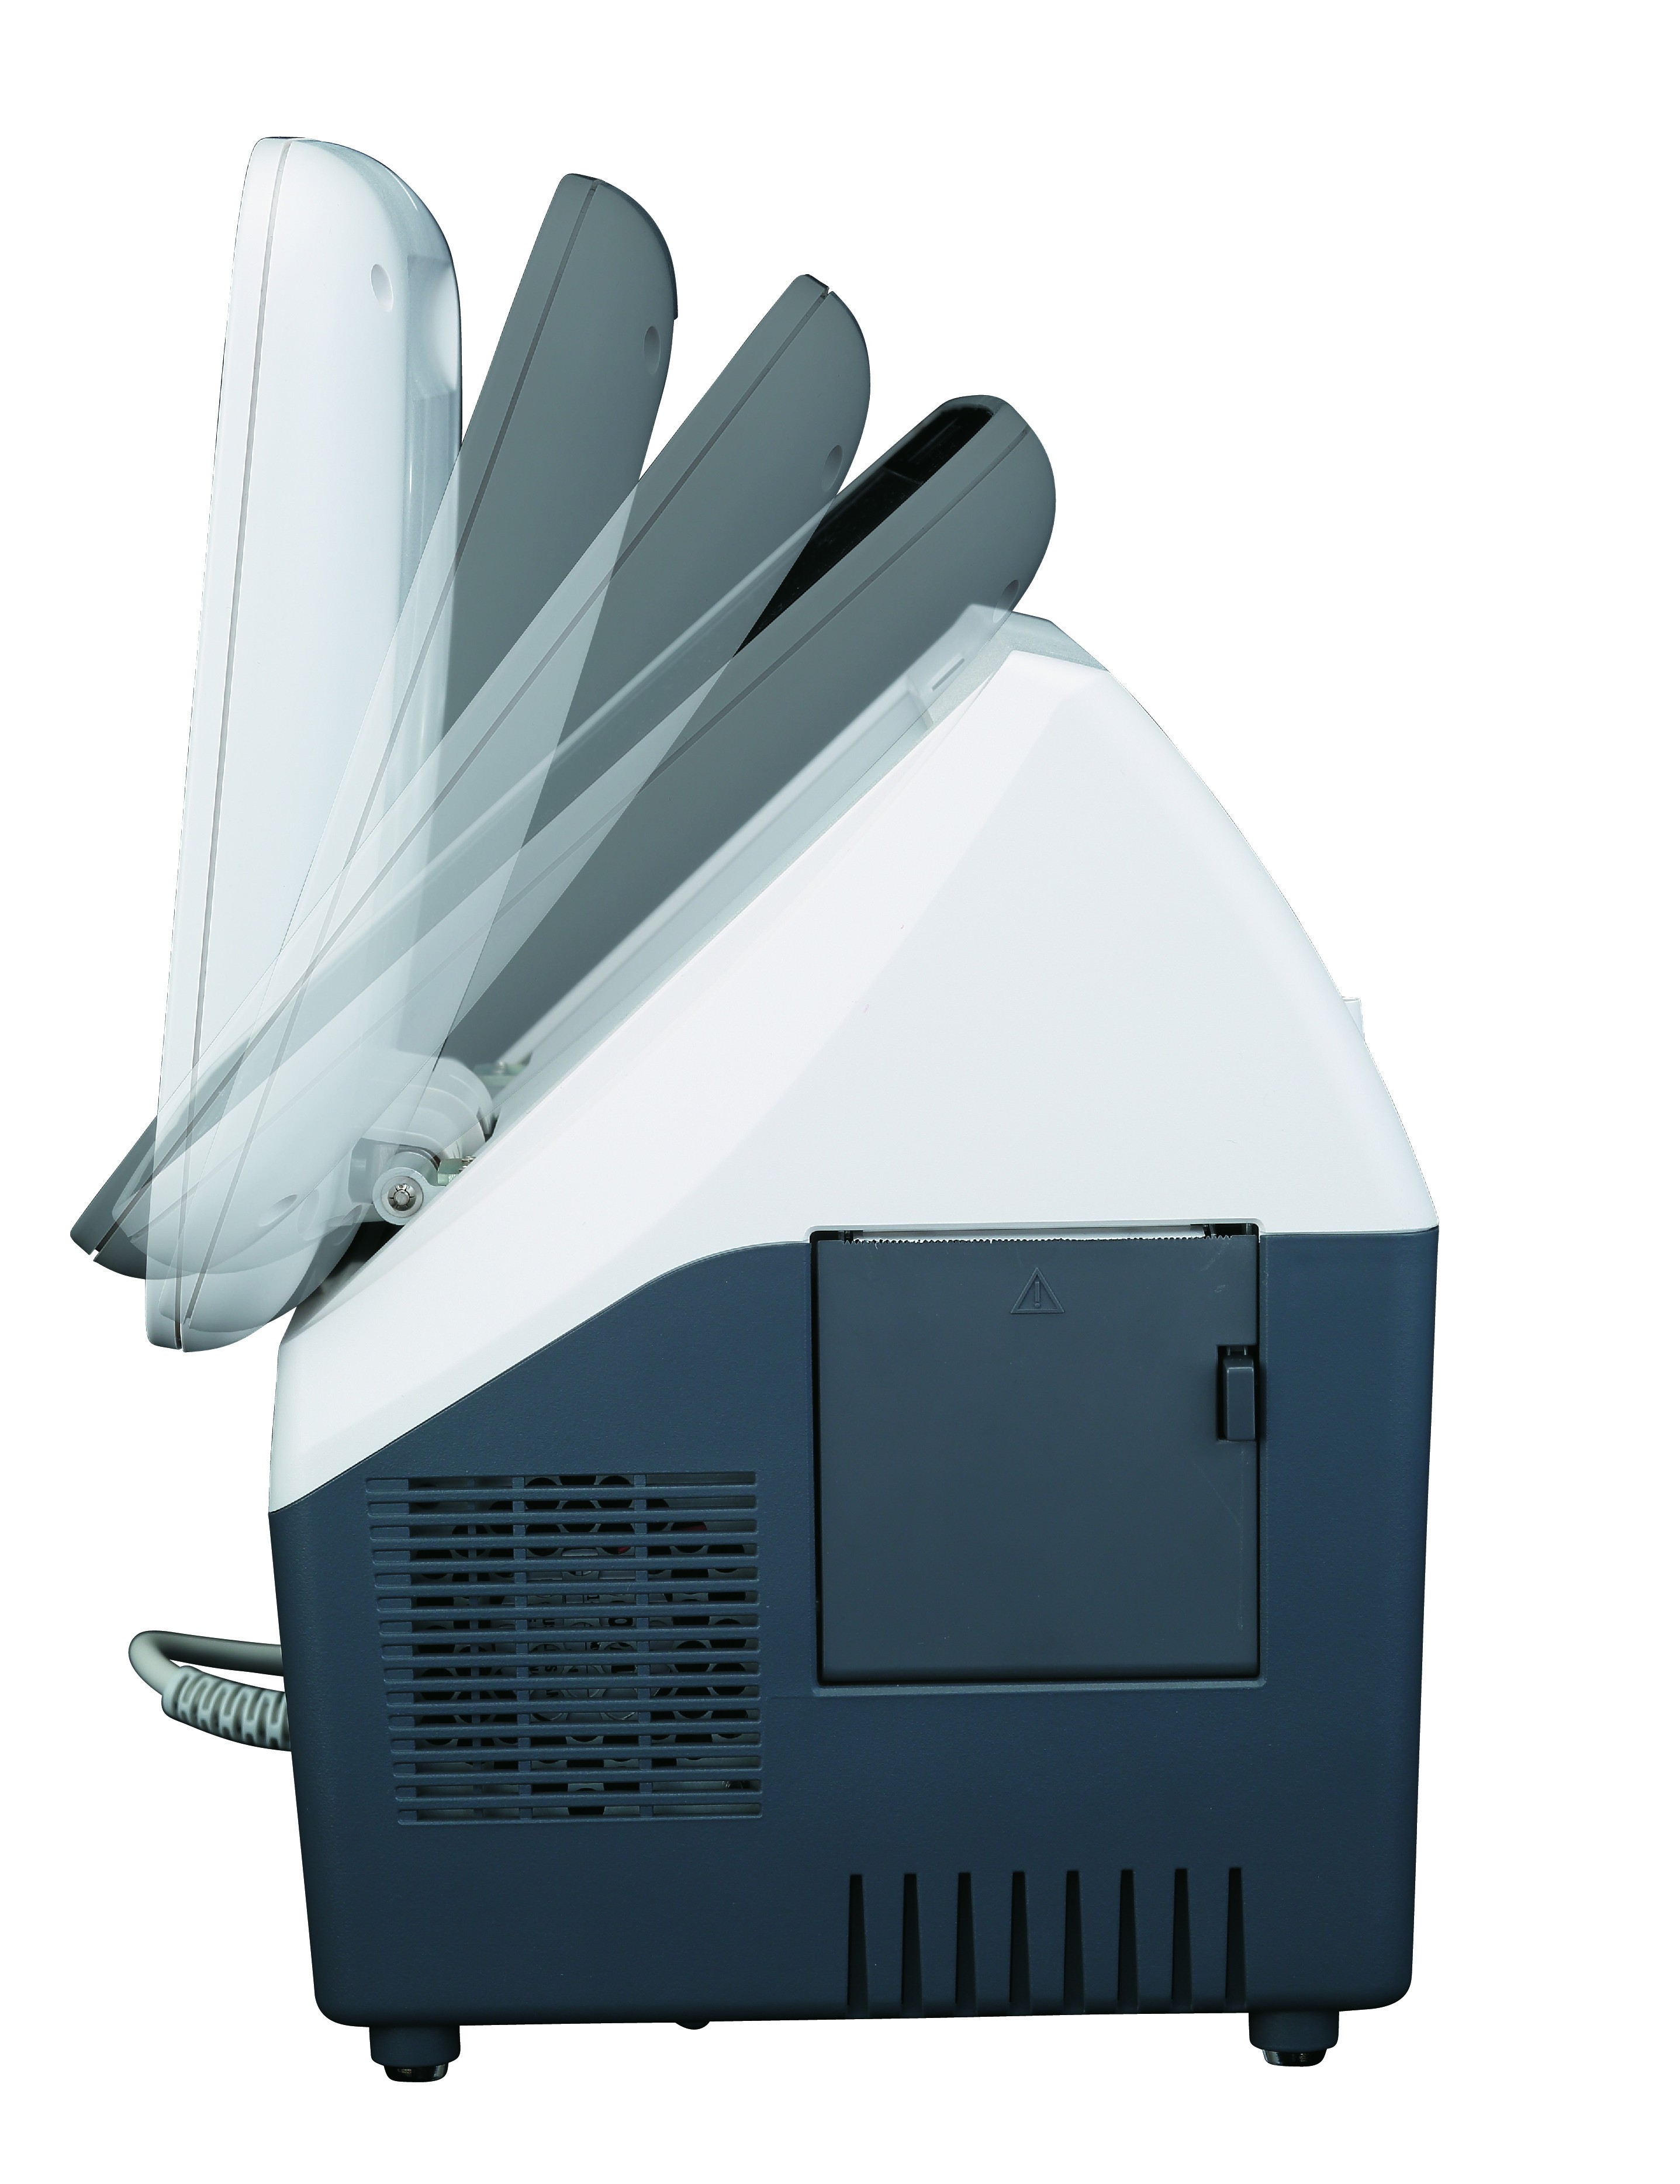 А/B-сканер ультразвуковой и пахиметр, модель UD-800 - изображение 2